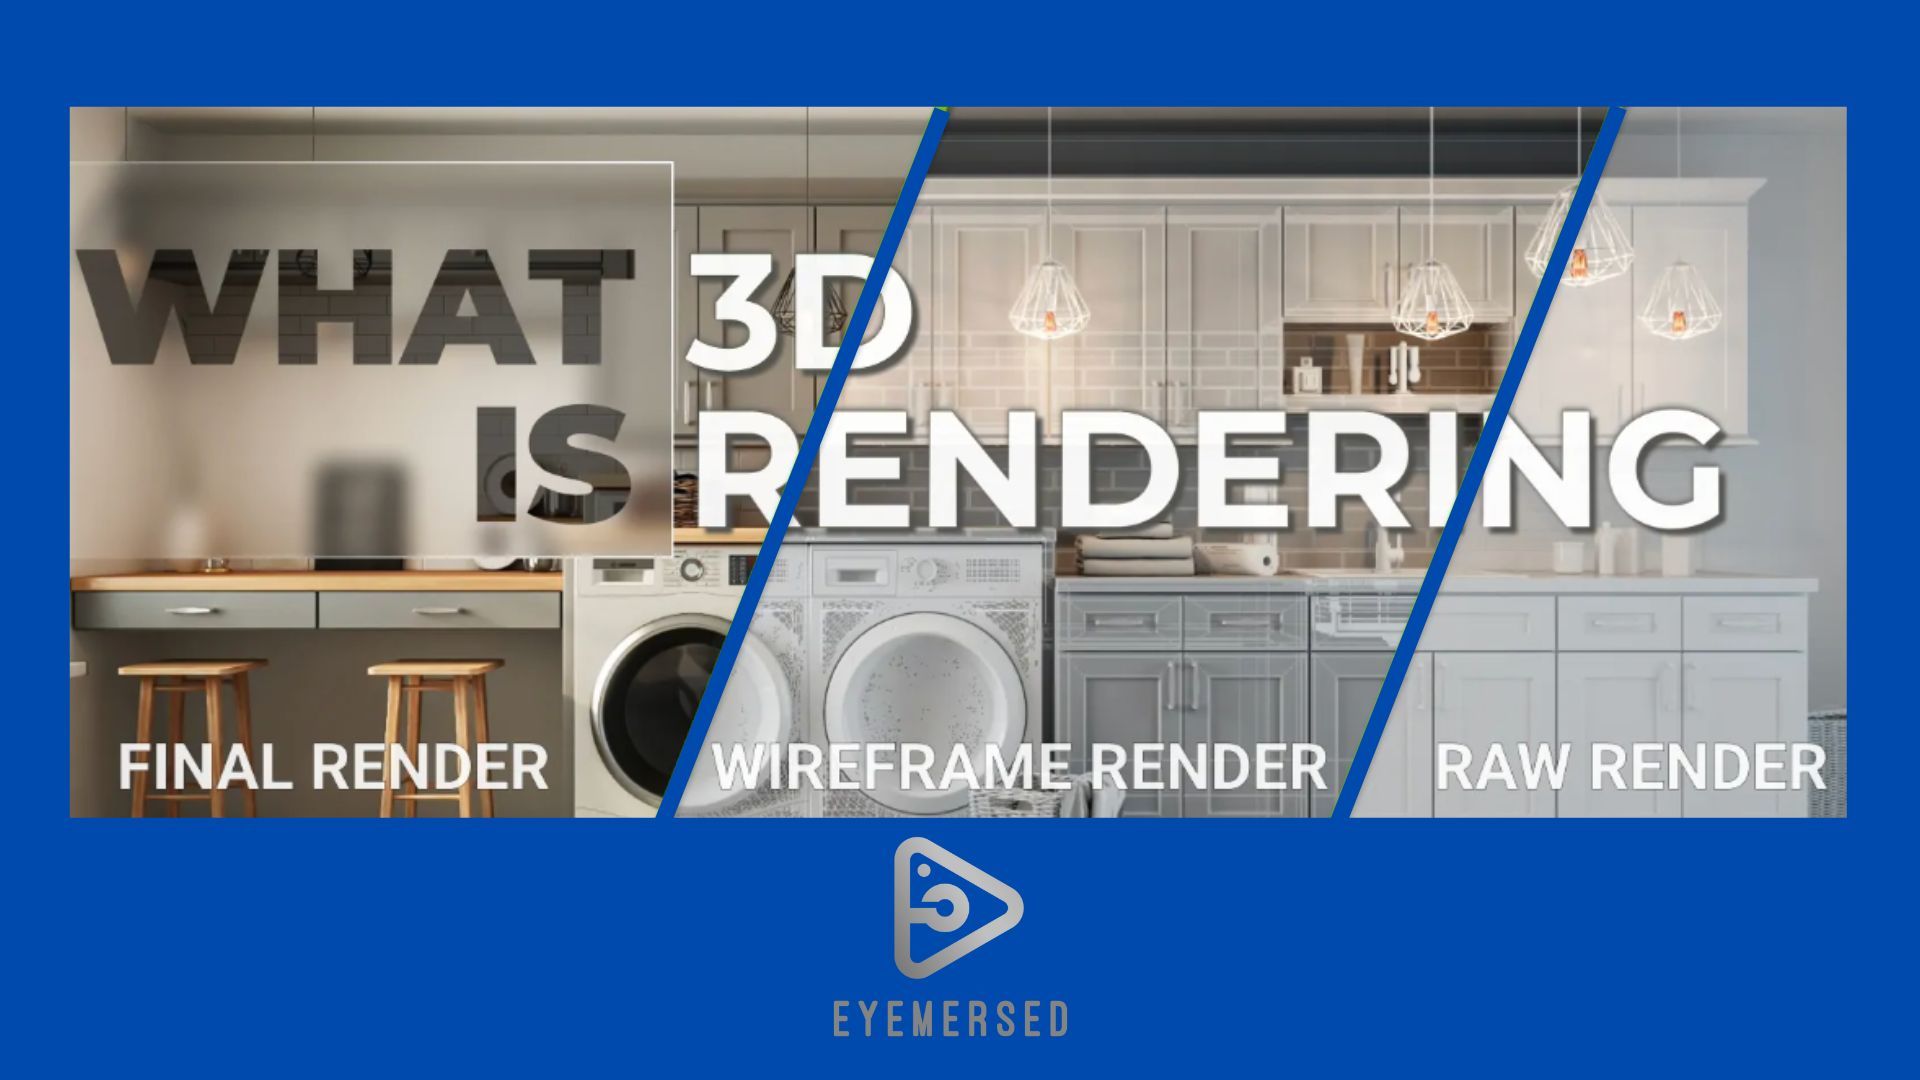 What 3d is rendering final render wireframe render raw render